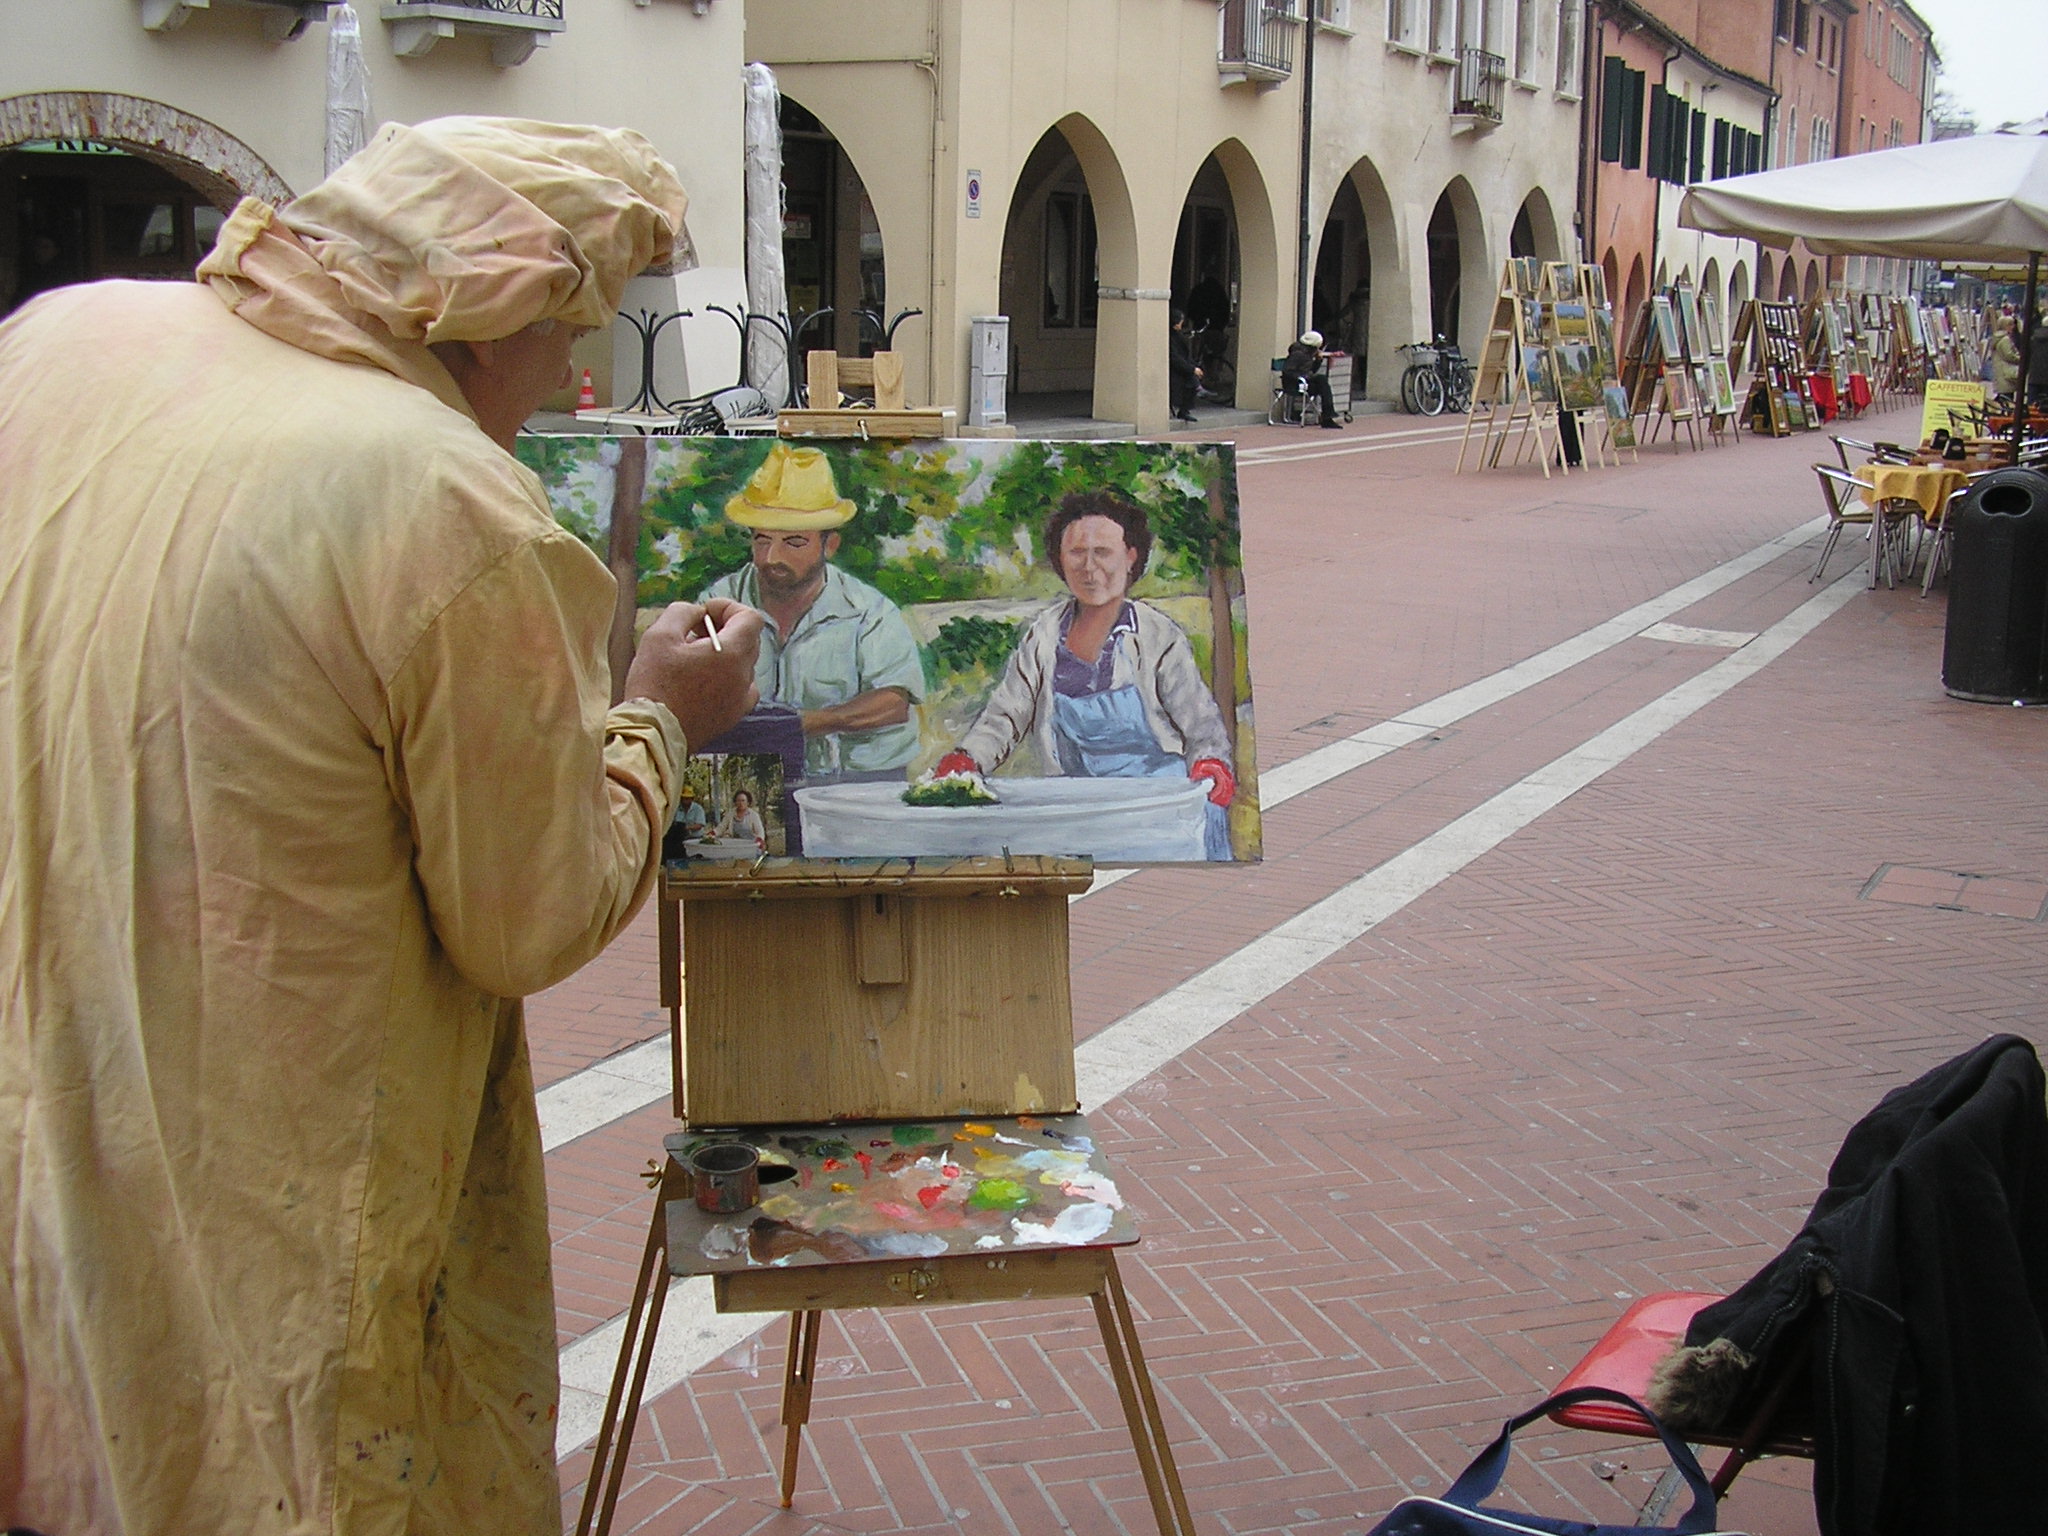 Pittore, visto di spalle, dipinge un quadro in una strada cittadina